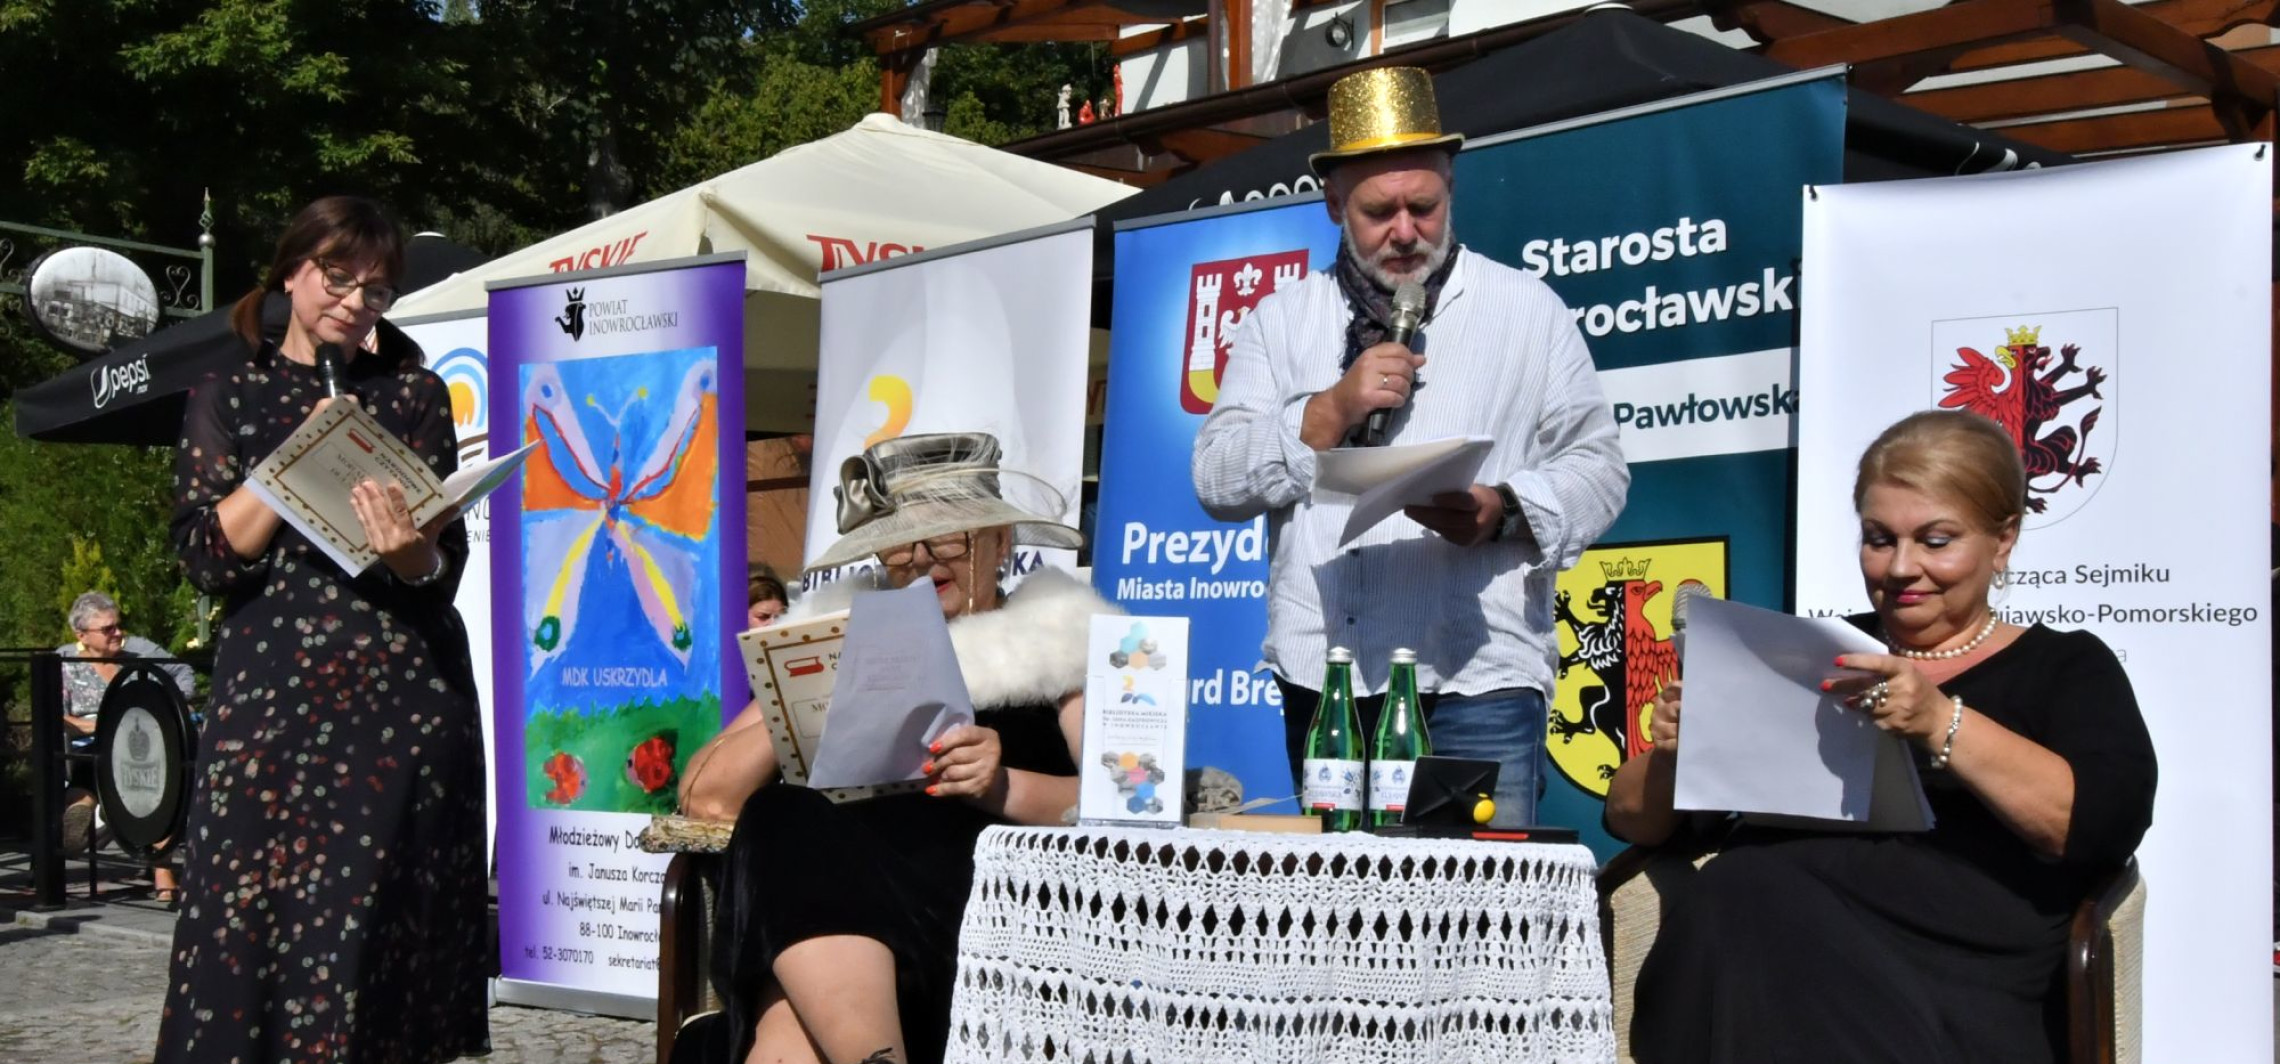 Inowrocław - Starosta w roli Dulskiej, czyli narodowe czytanie